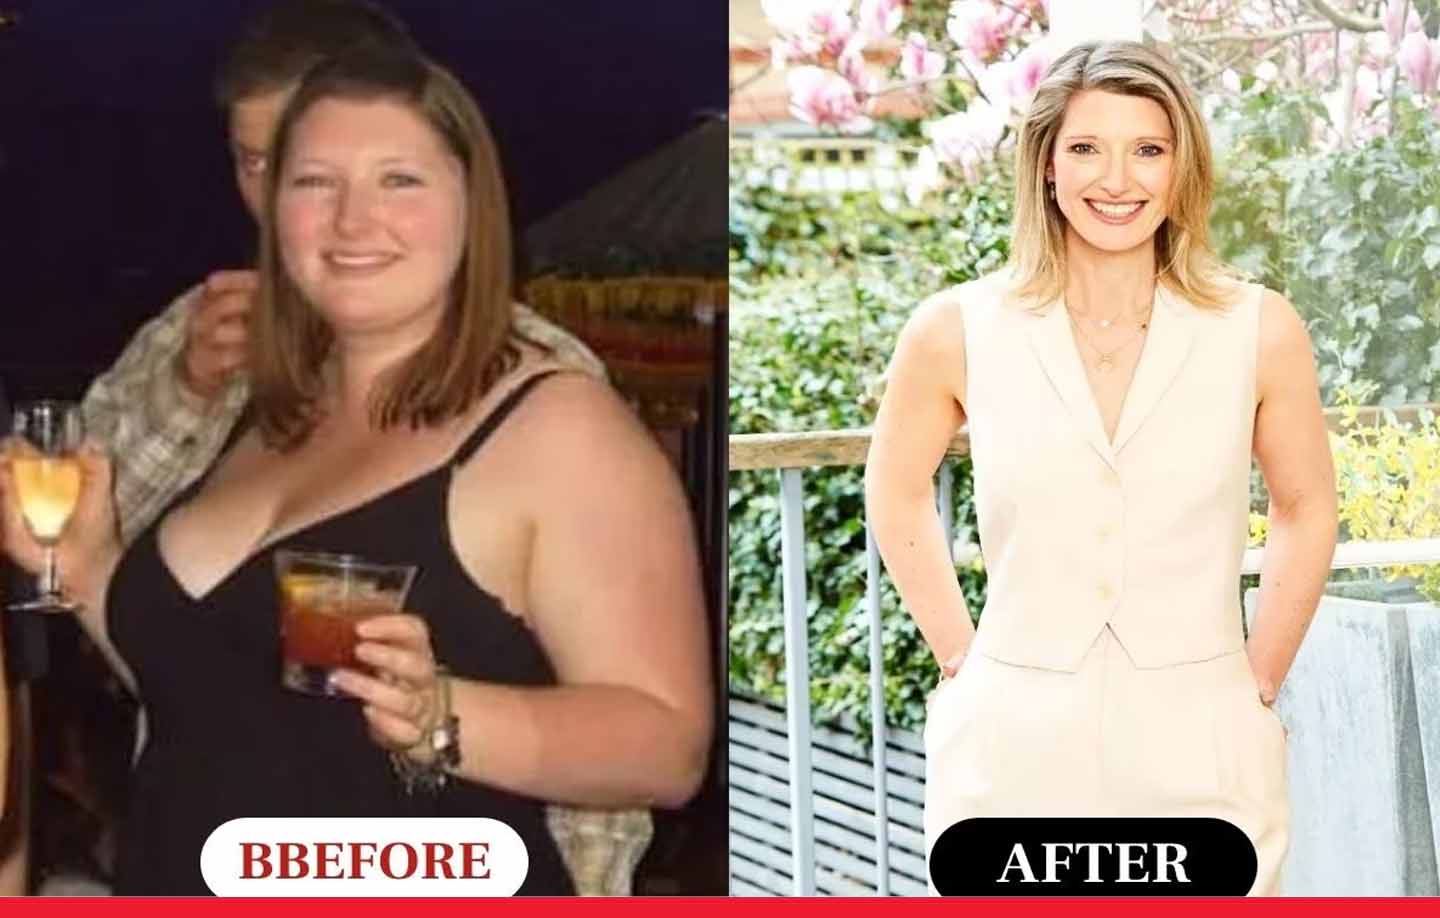 पसंदीदा खाना खाकर महिला ने 10 महीने में कम किया 44 किलो वजन